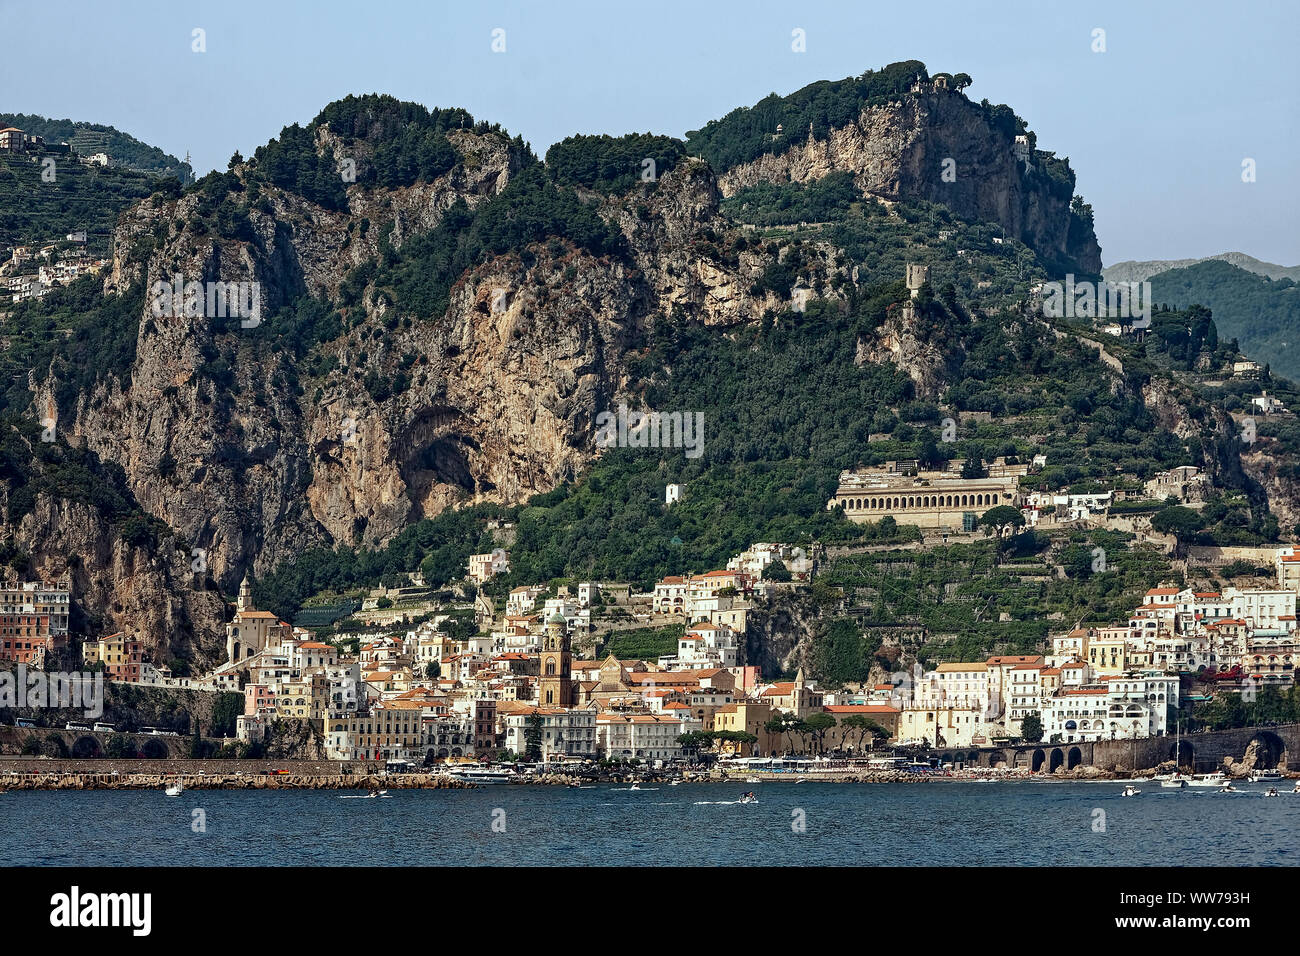 Küste von Amalfi, Tyrrhenische Meer, Felsen, Gebäude nahe beieinander, Boote, Wasser, Häuser am Hang, Vegetation, Scenic, Europa Stockfoto